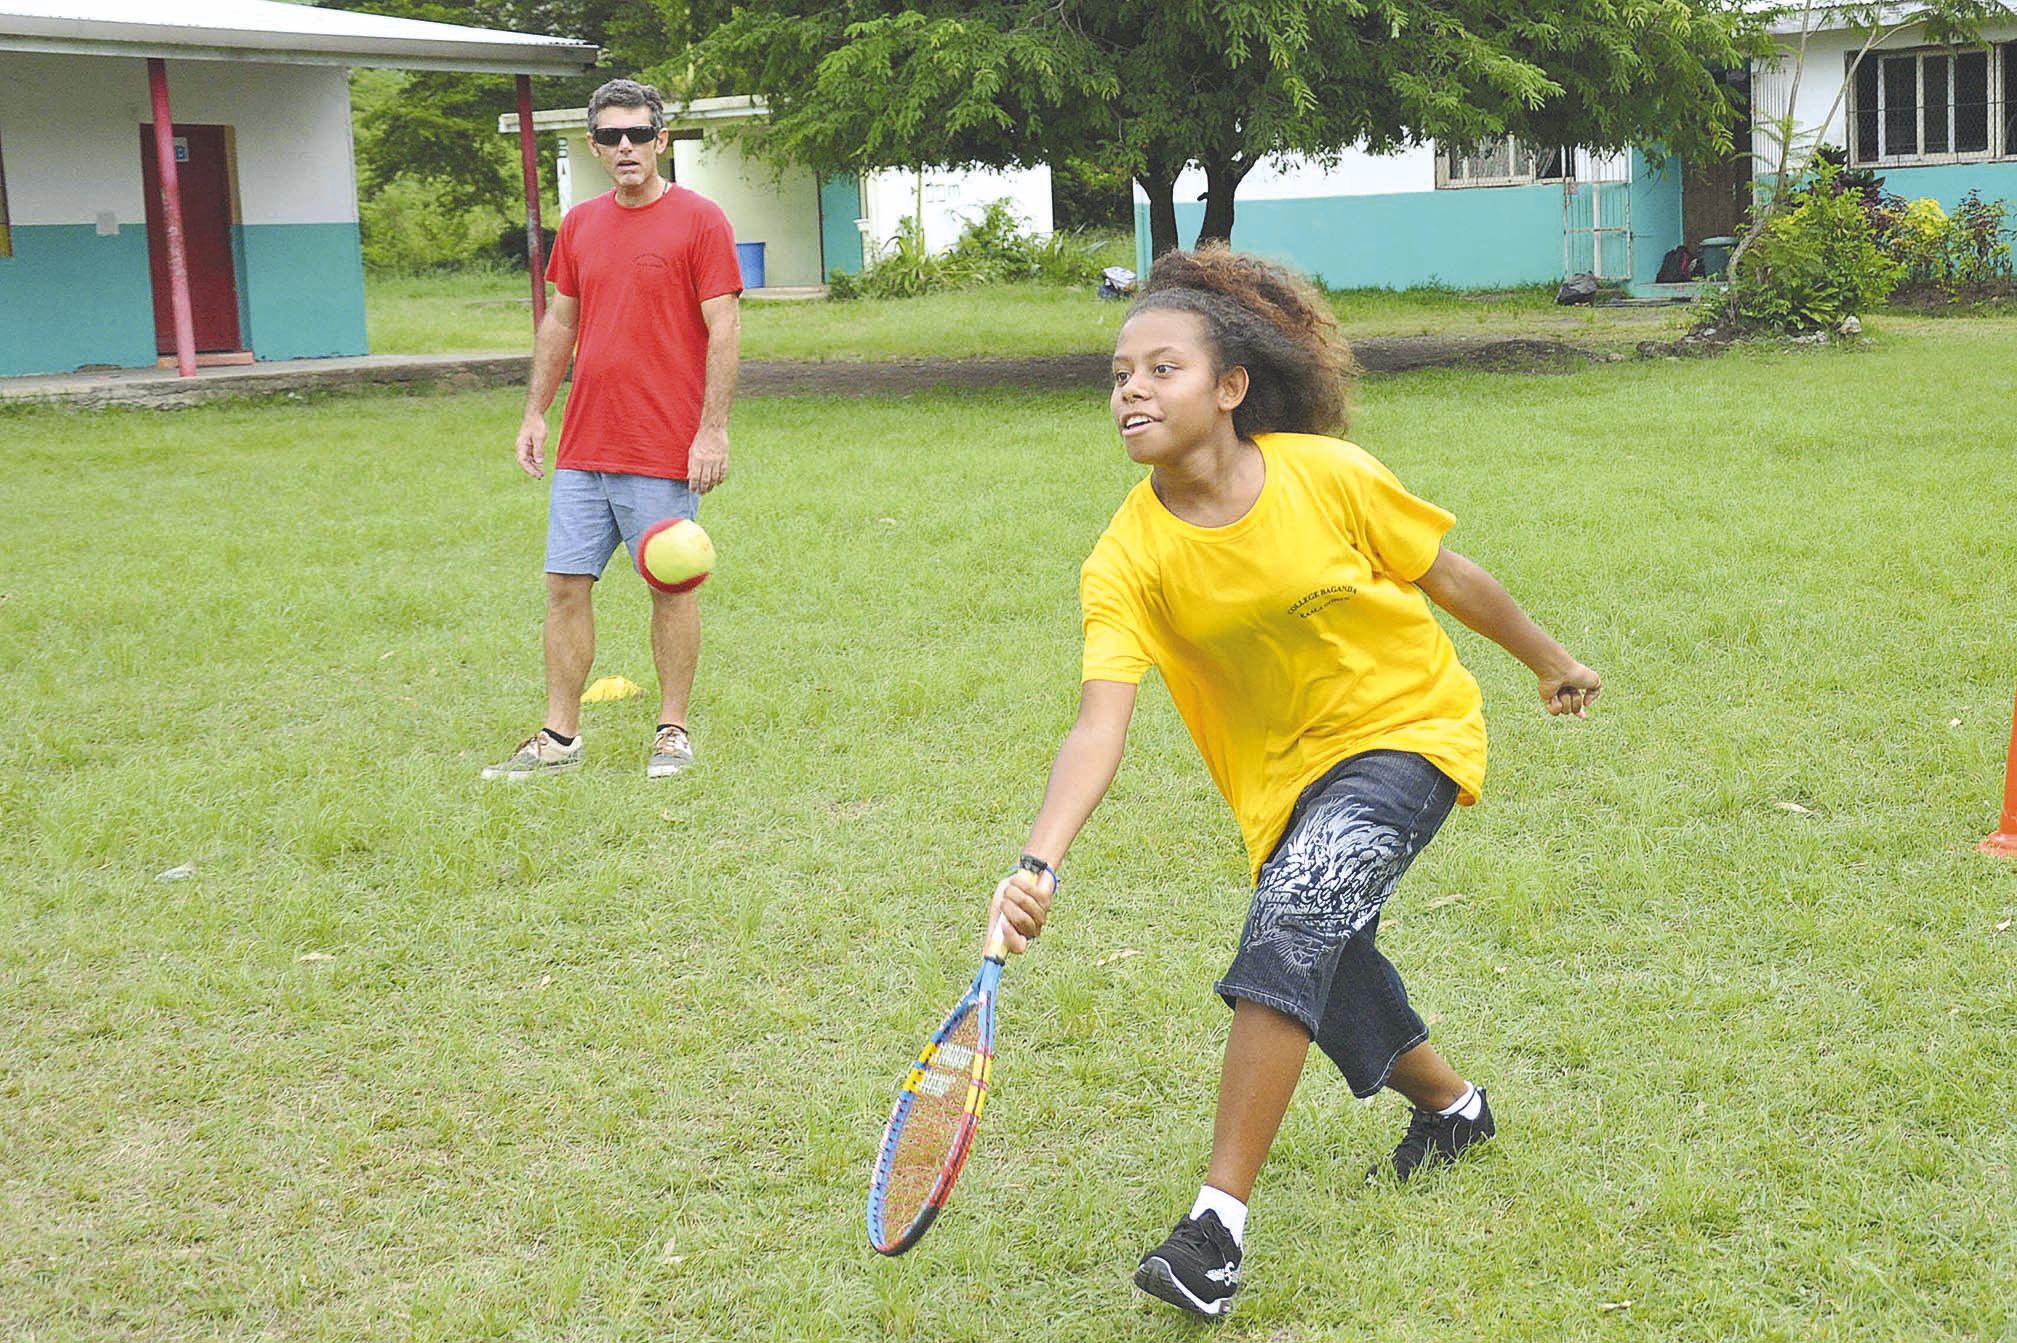 Avec le beach-tennis, les élèves ont découvert l’activité tennis hors des courts traditionnels. Ils ont appris la tenue et le bon usage de la raquette pour faire des échanges entre eux.